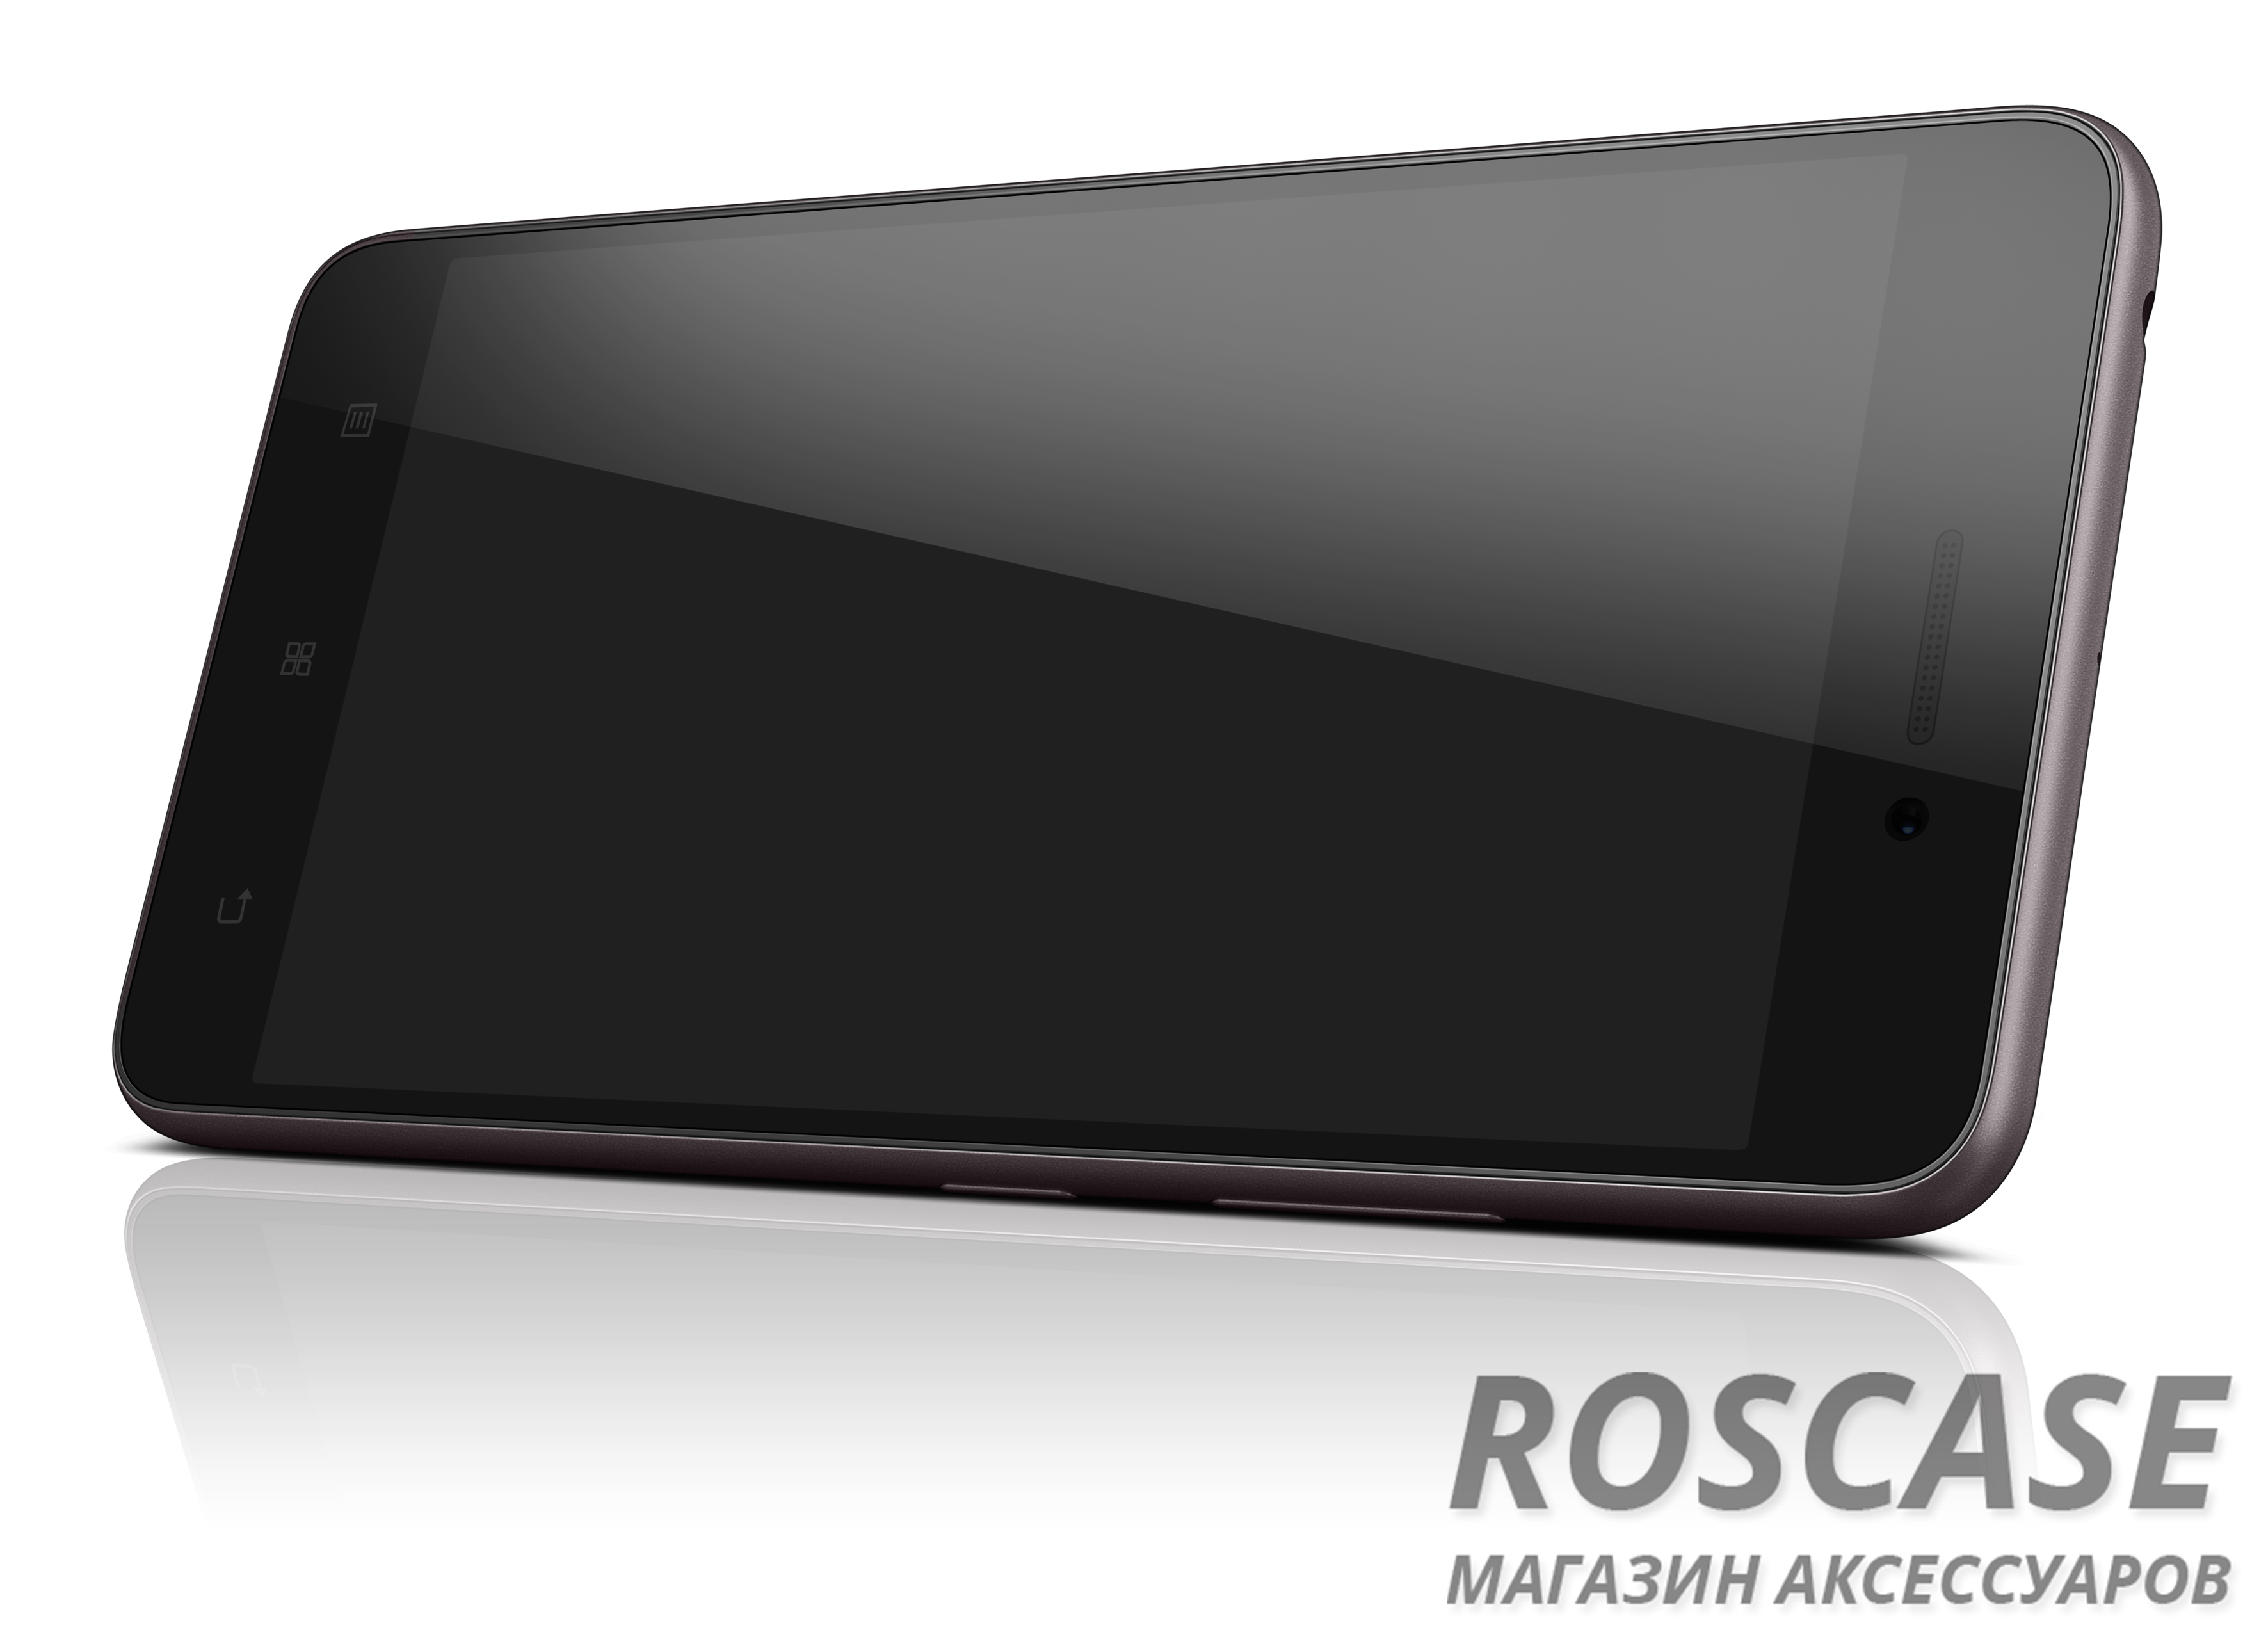 Экран смартфона Lenovo S60